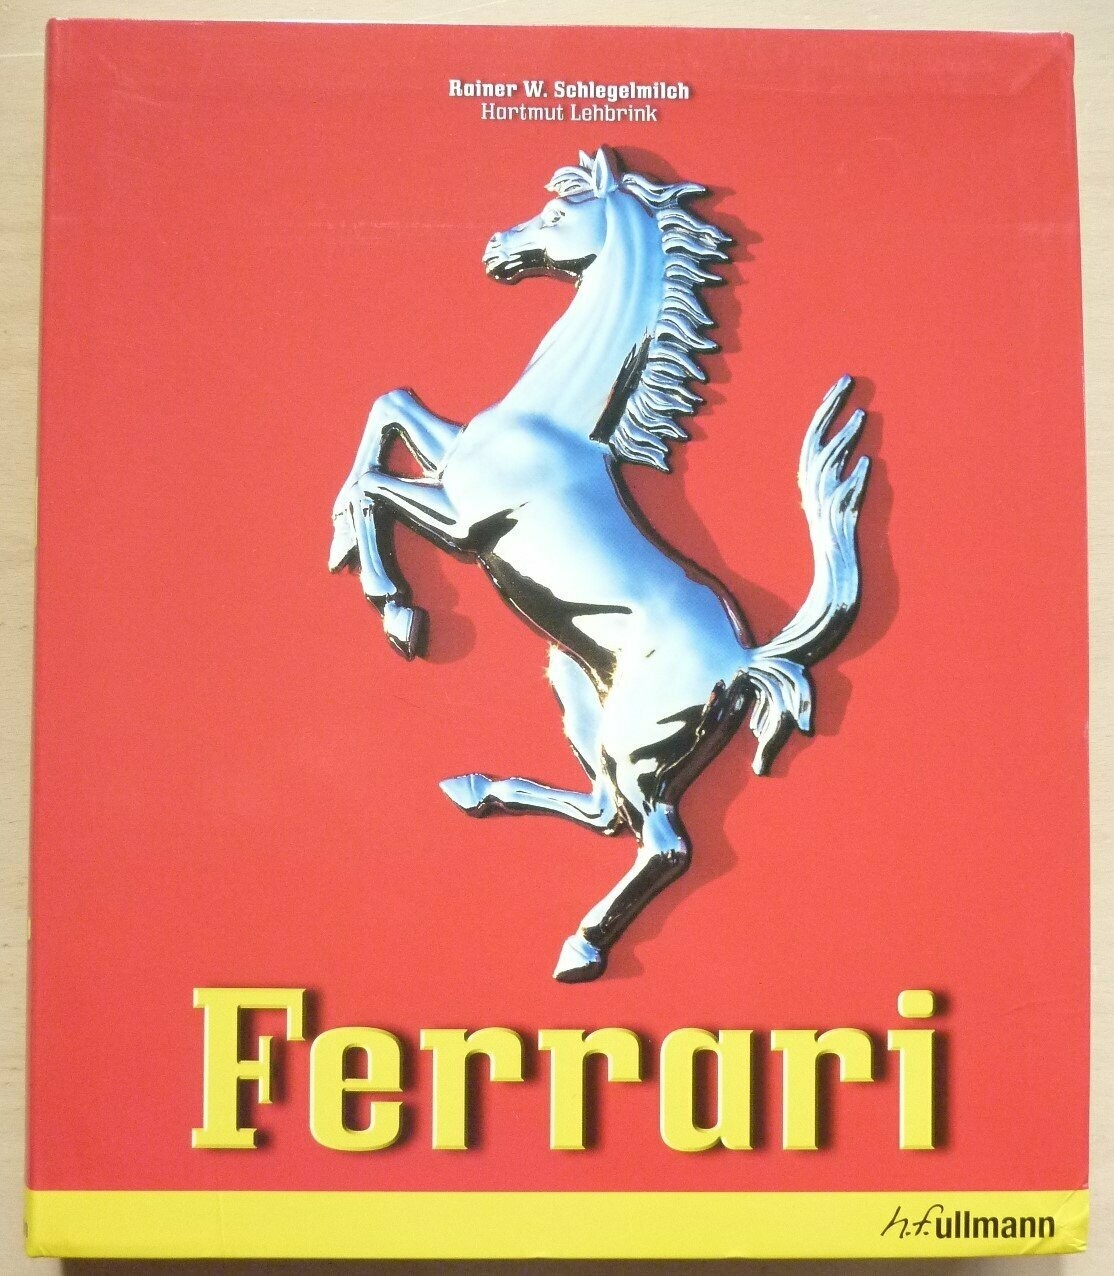 Ferrari by Schlegelmilch & Lehbrink